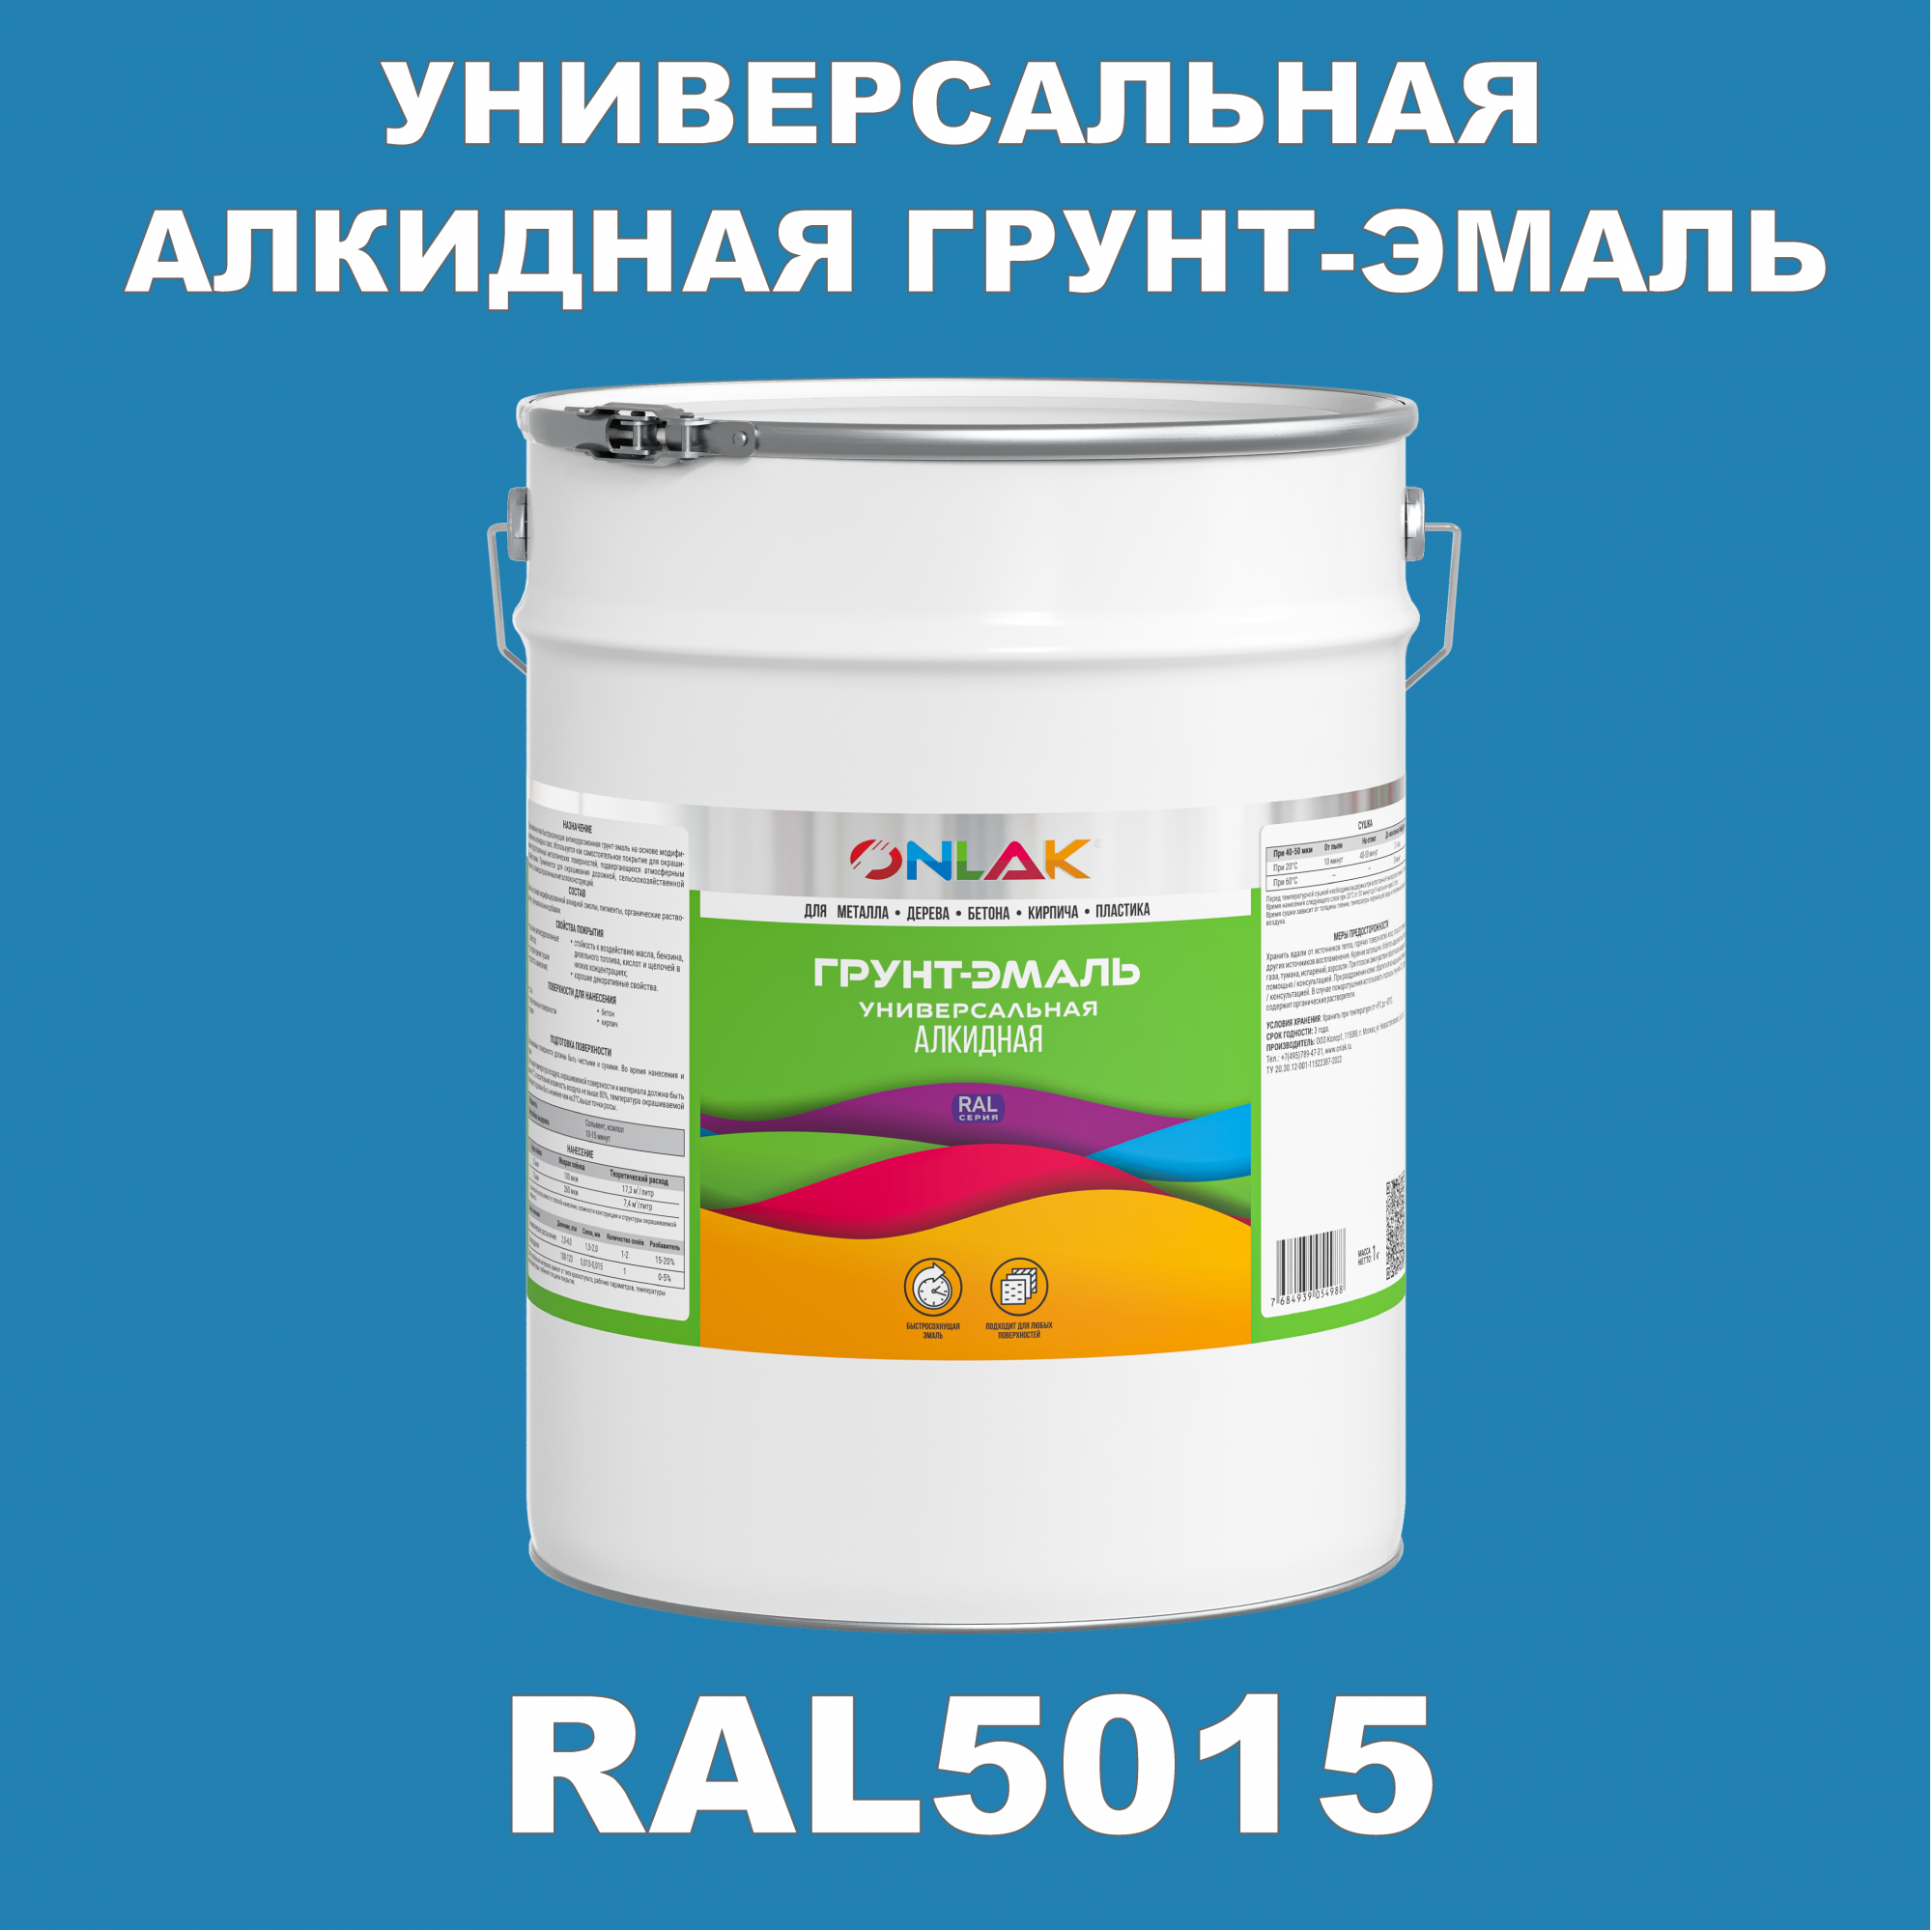 Грунт-эмаль ONLAK 1К RAL5015 антикоррозионная алкидная по металлу по ржавчине 20 кг грунт эмаль yollo по ржавчине алкидная серая 0 9 кг